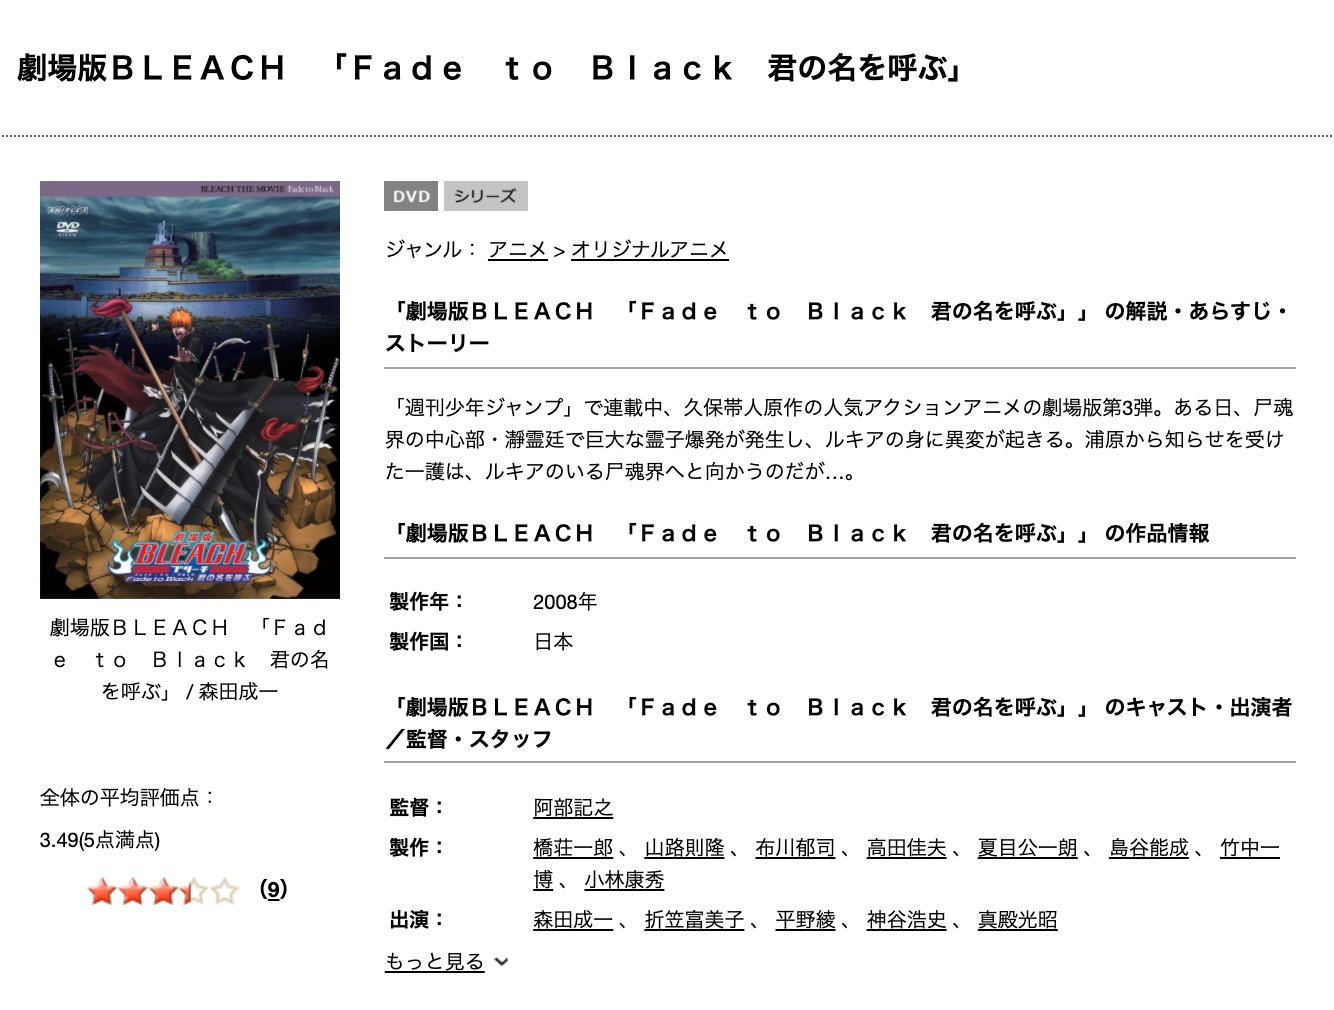 劇場版 Bleach Fade To Black 君の名を呼ぶの動画を無料フル視聴できるサイトまとめ 午後のアニch アニメの動画情報や考察まとめ